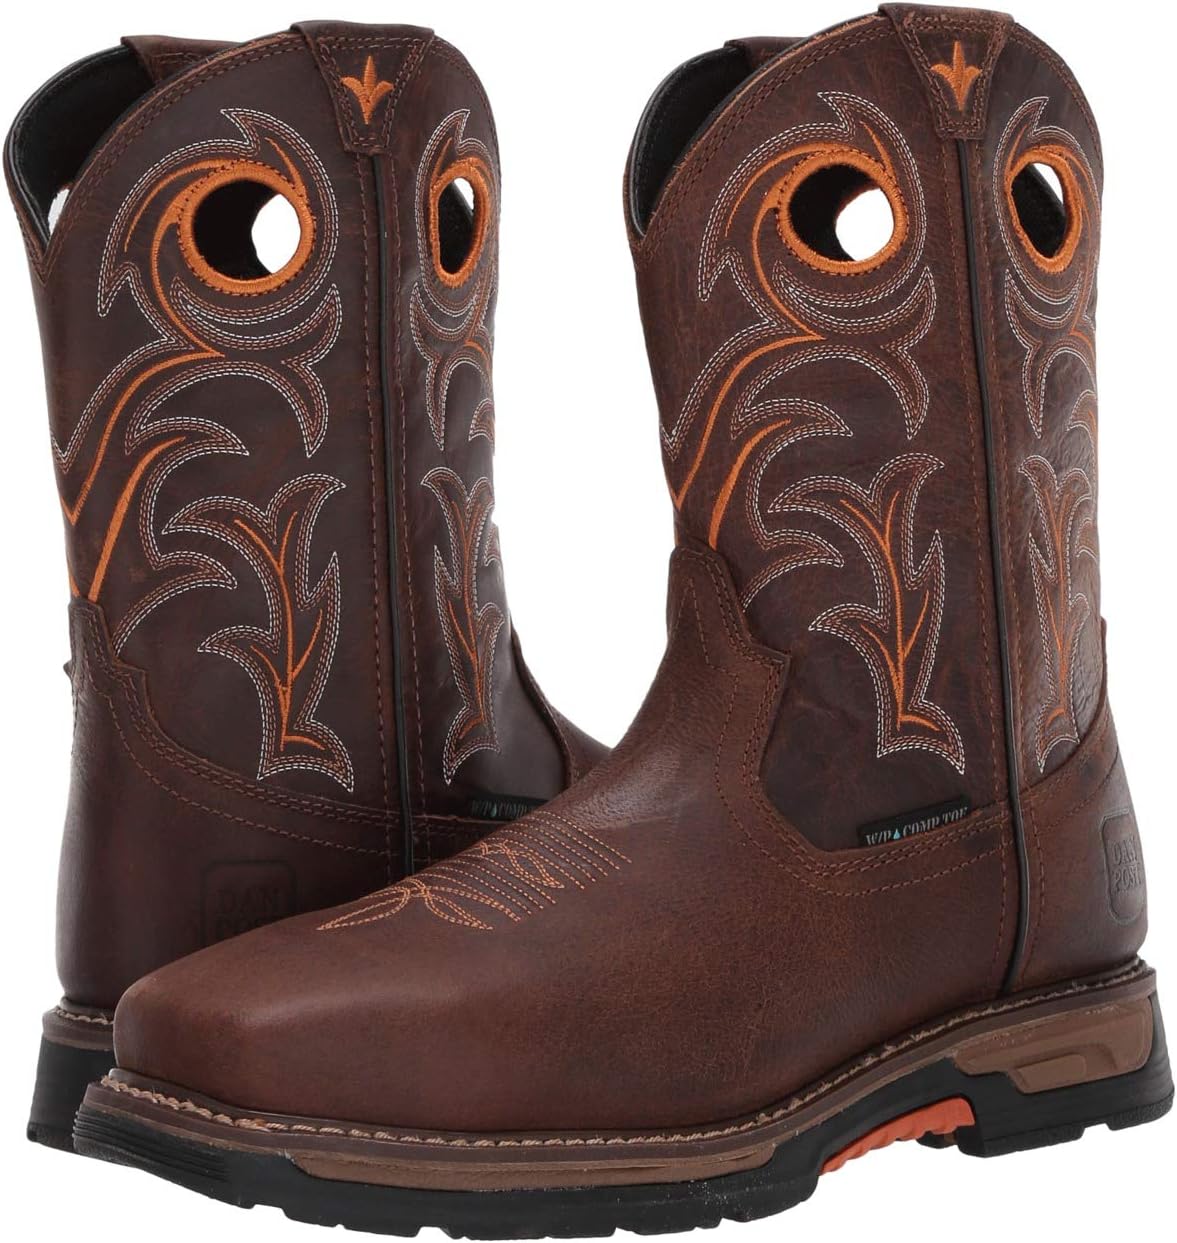 Рабочая обувь водонепроницаемая с композитным носком Storms Eye Waterproof Composite Toe EH Dan Post, цвет Brown/Orange